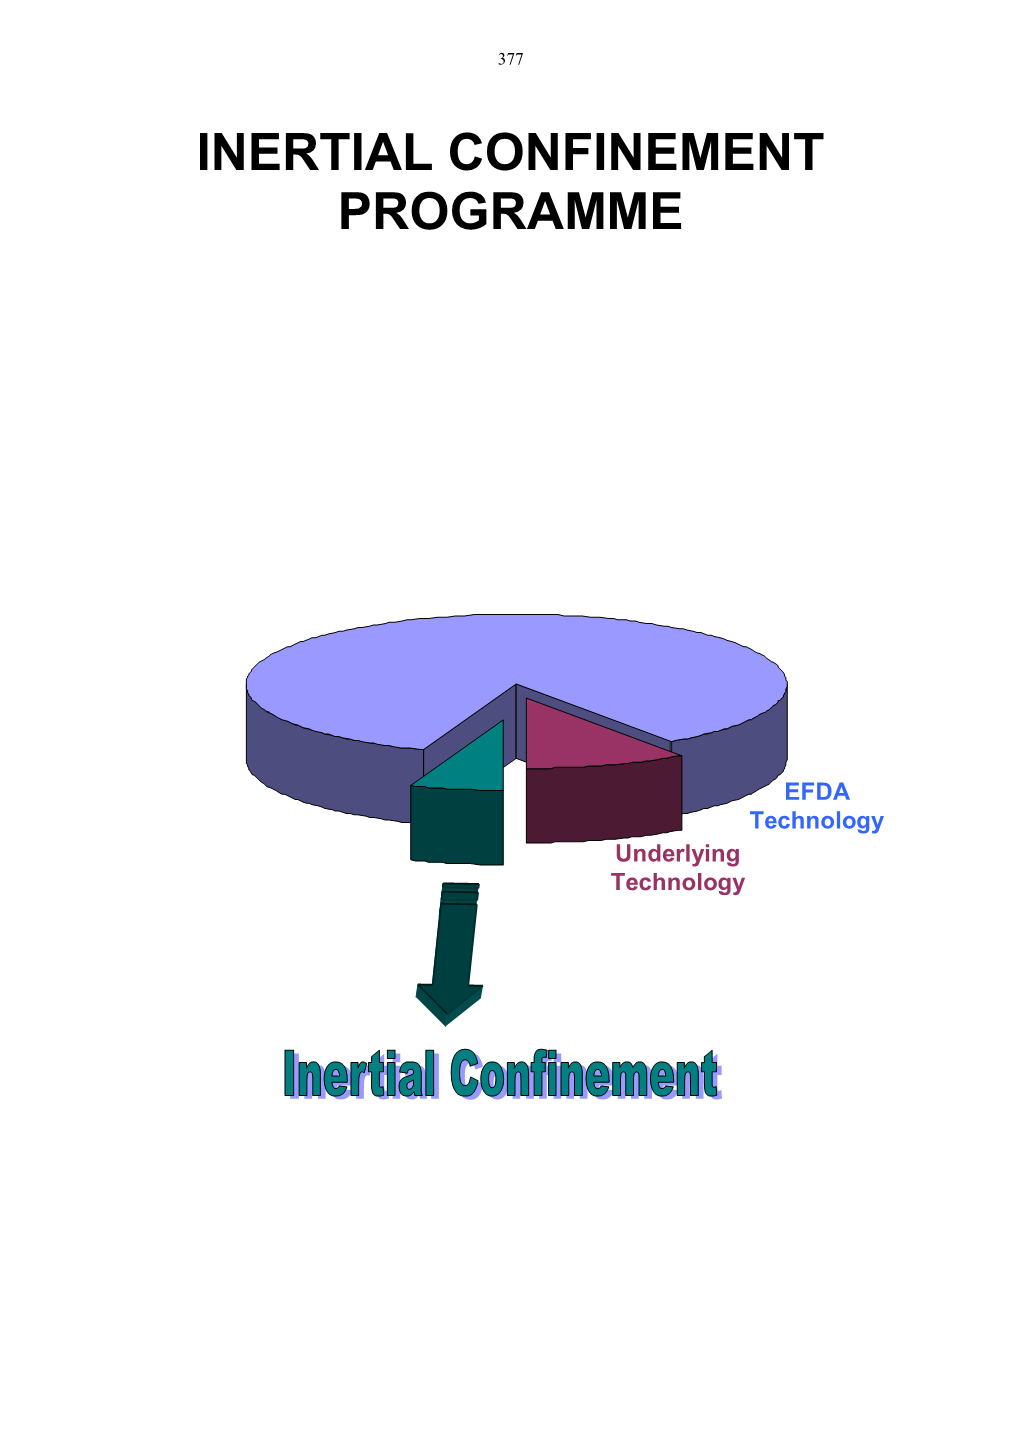 Inertial Confinement Programme